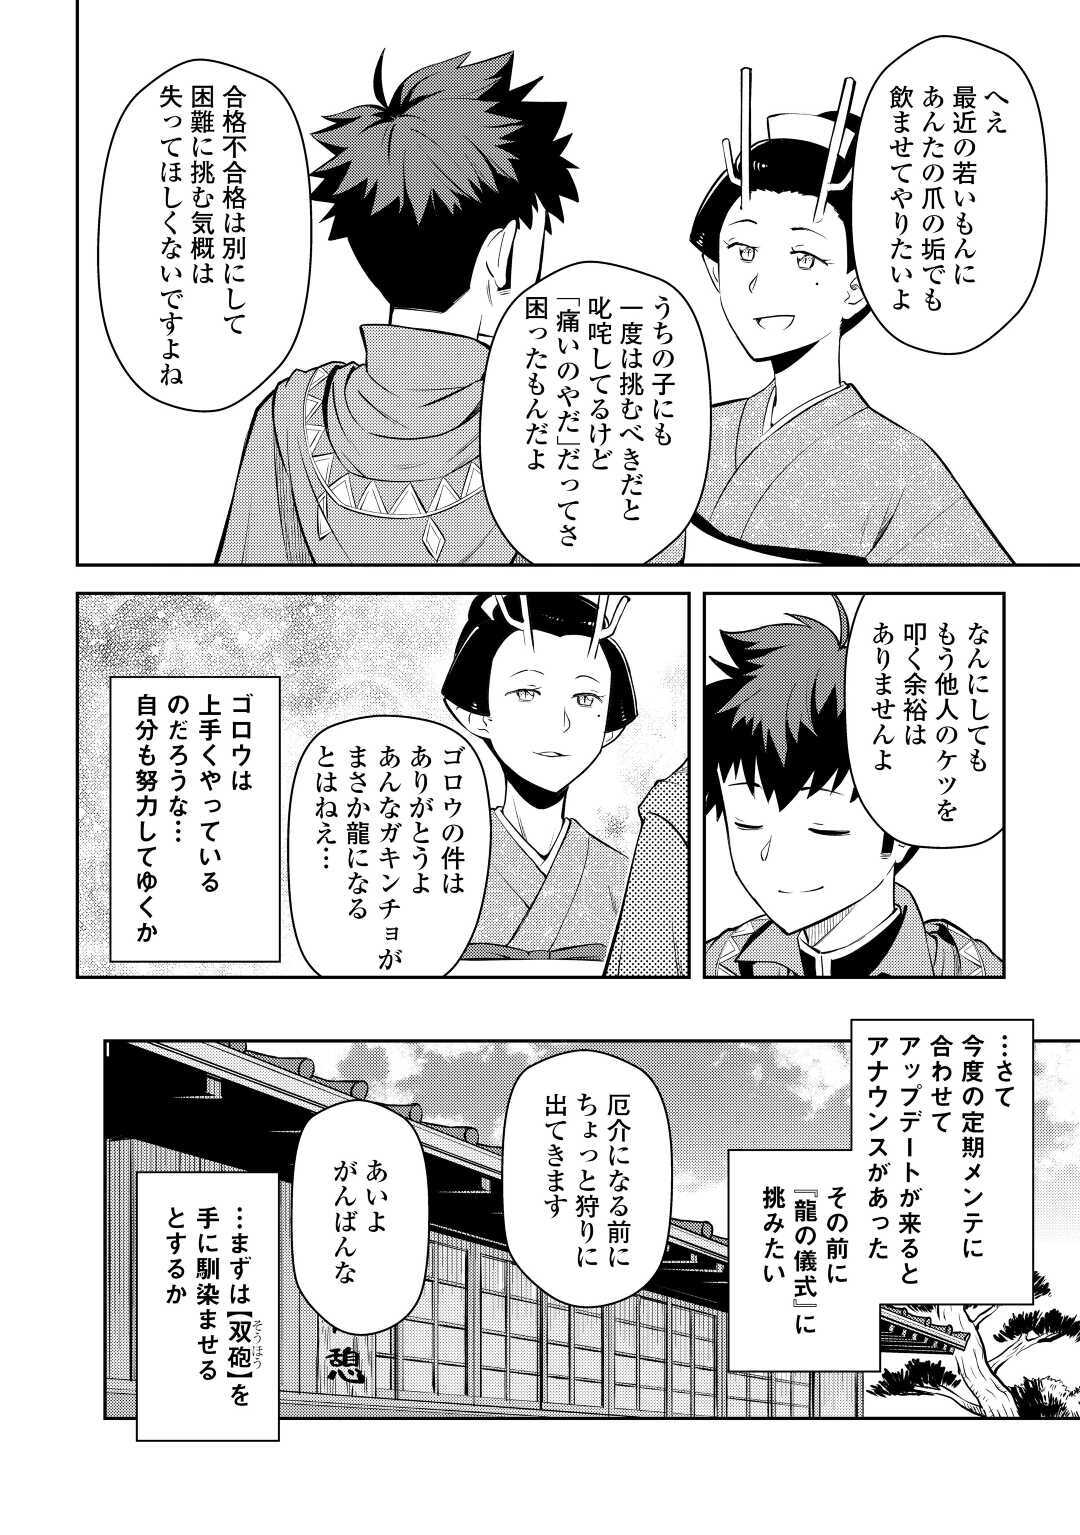 Toaru Ossan no VRMMO Katsudouki - Chapter 70 - Page 2